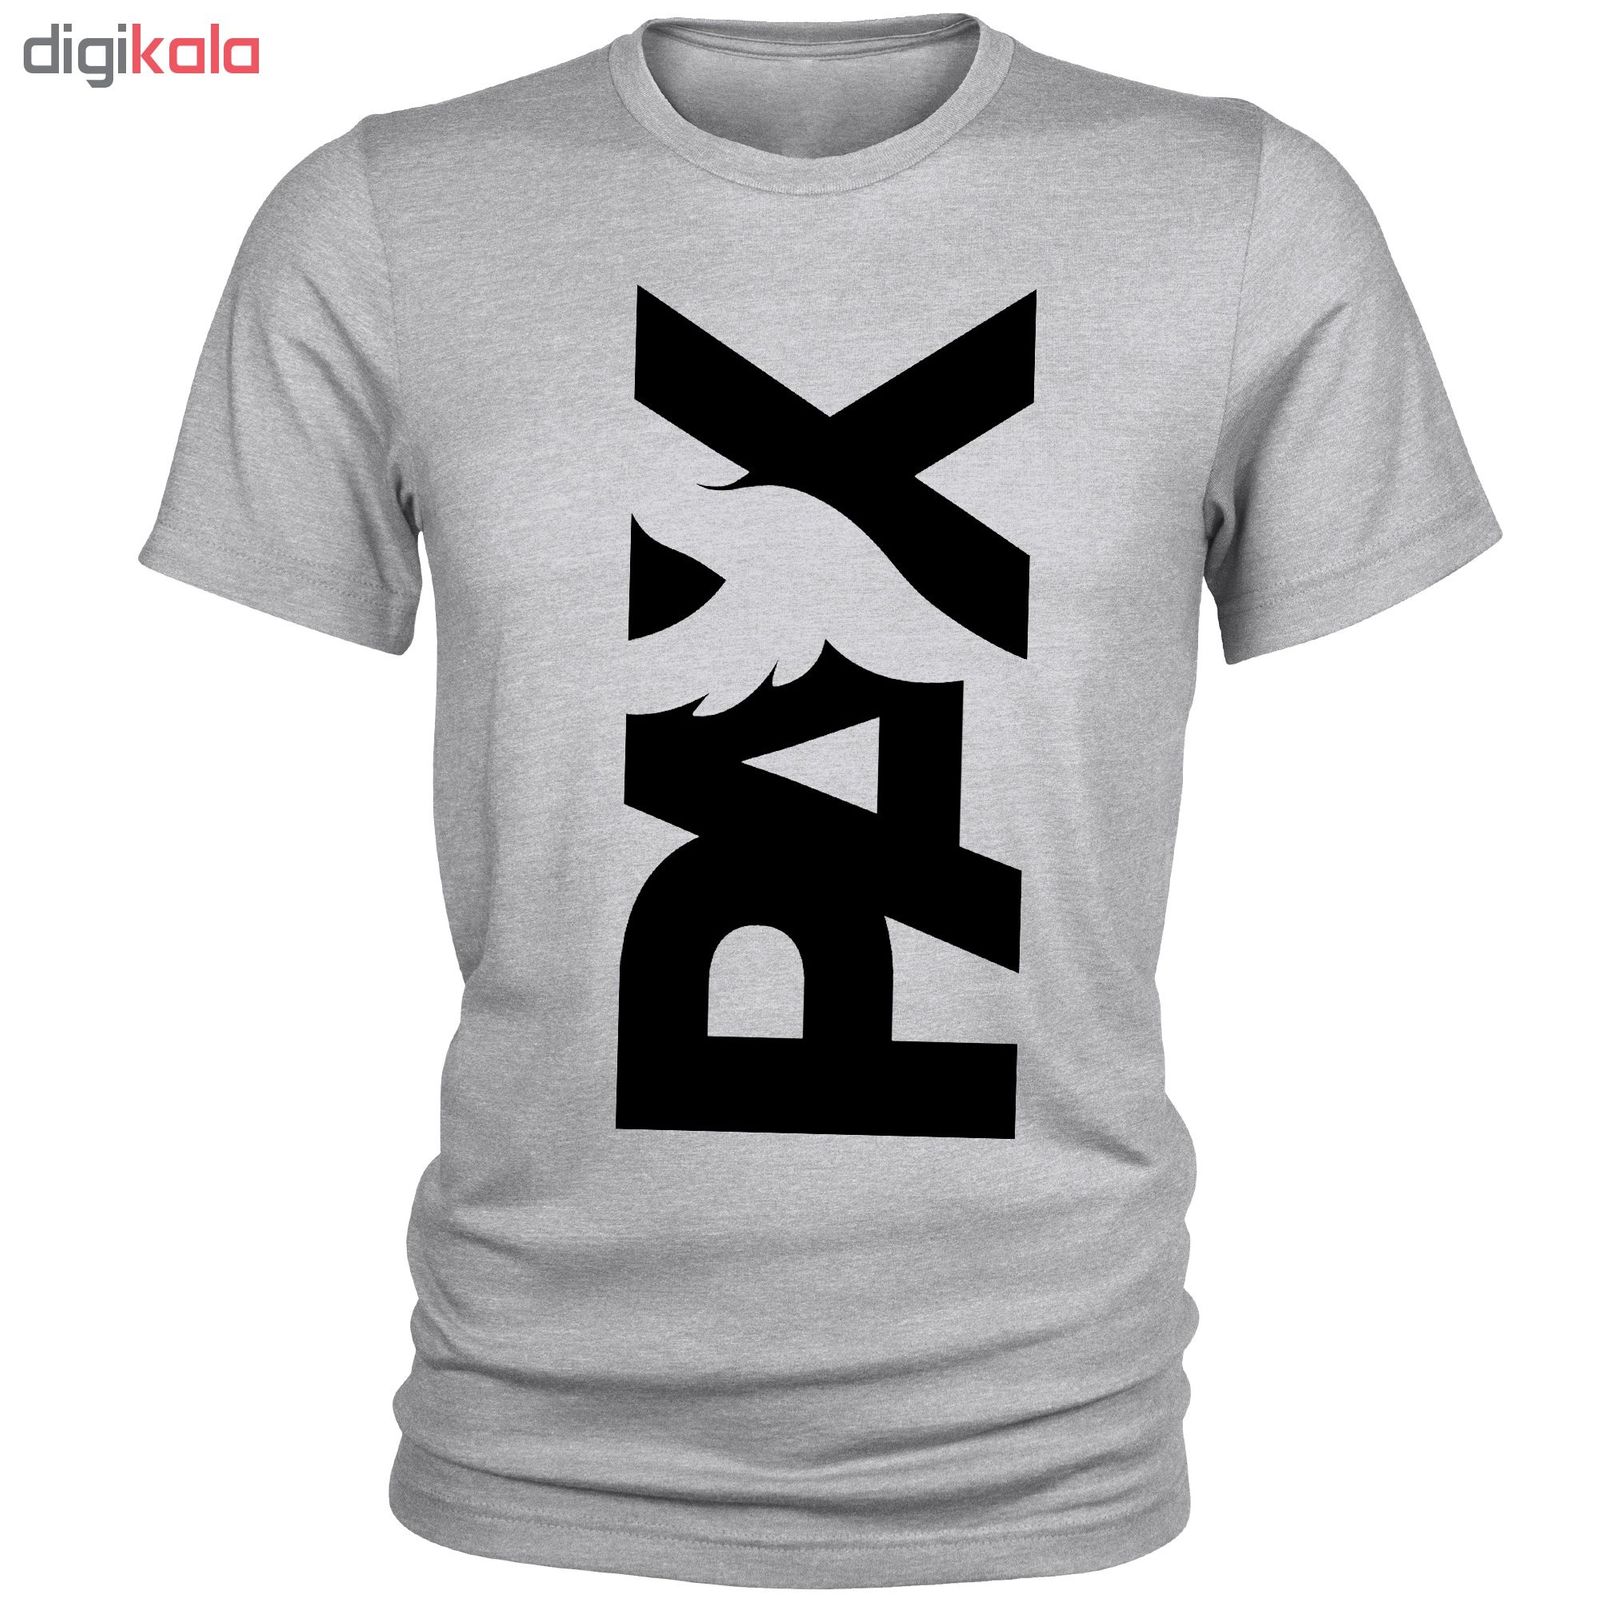 تی شرت مردانه مدل Pax کد A103